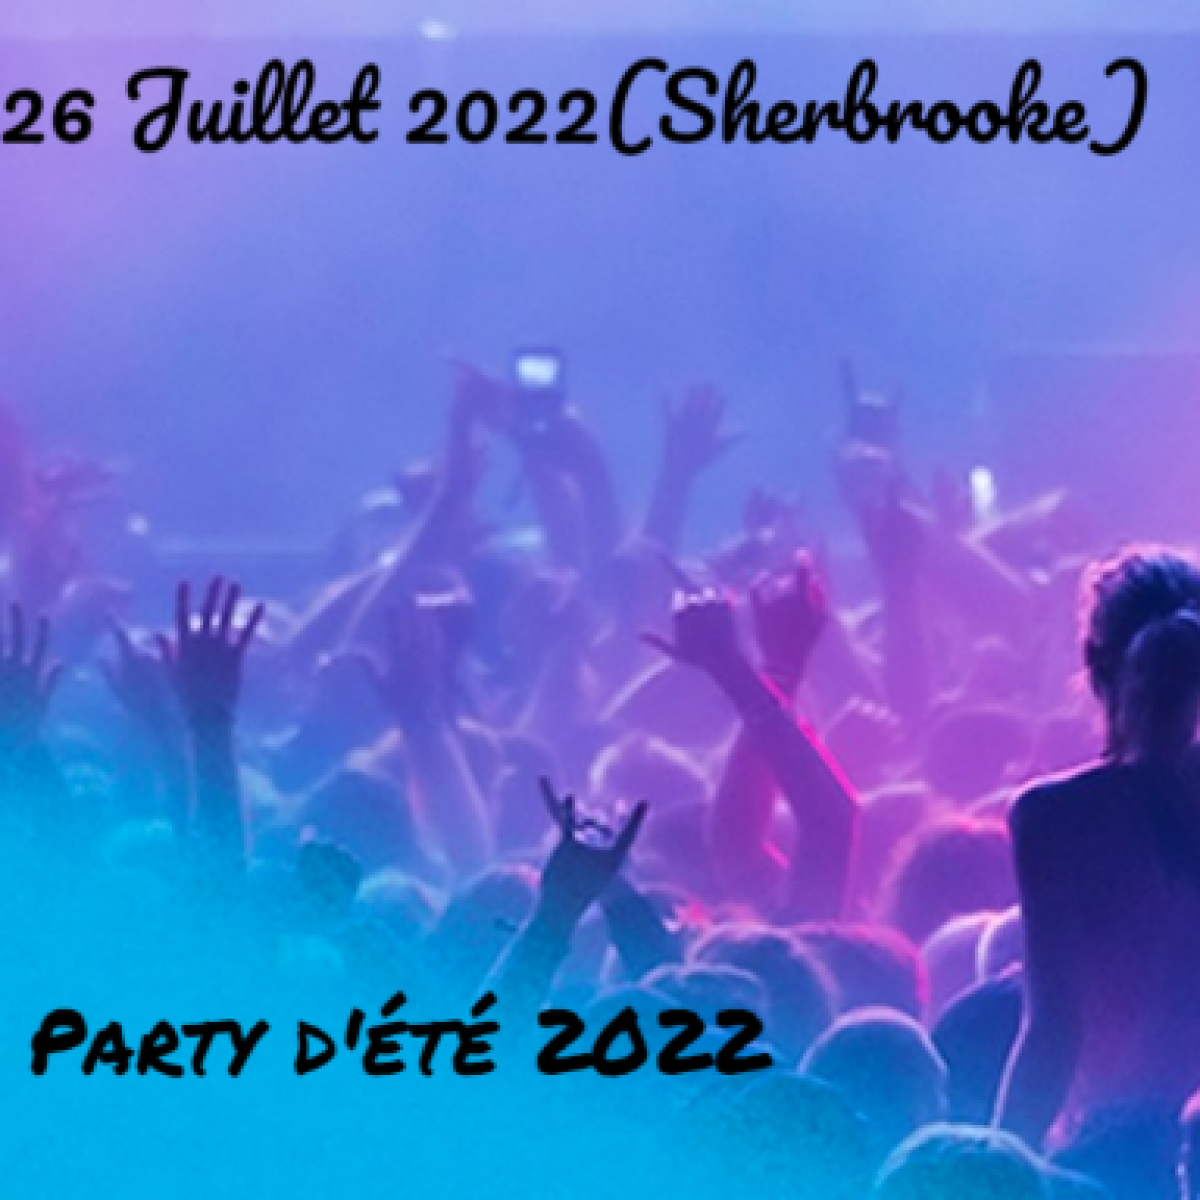 Party d'été 2022